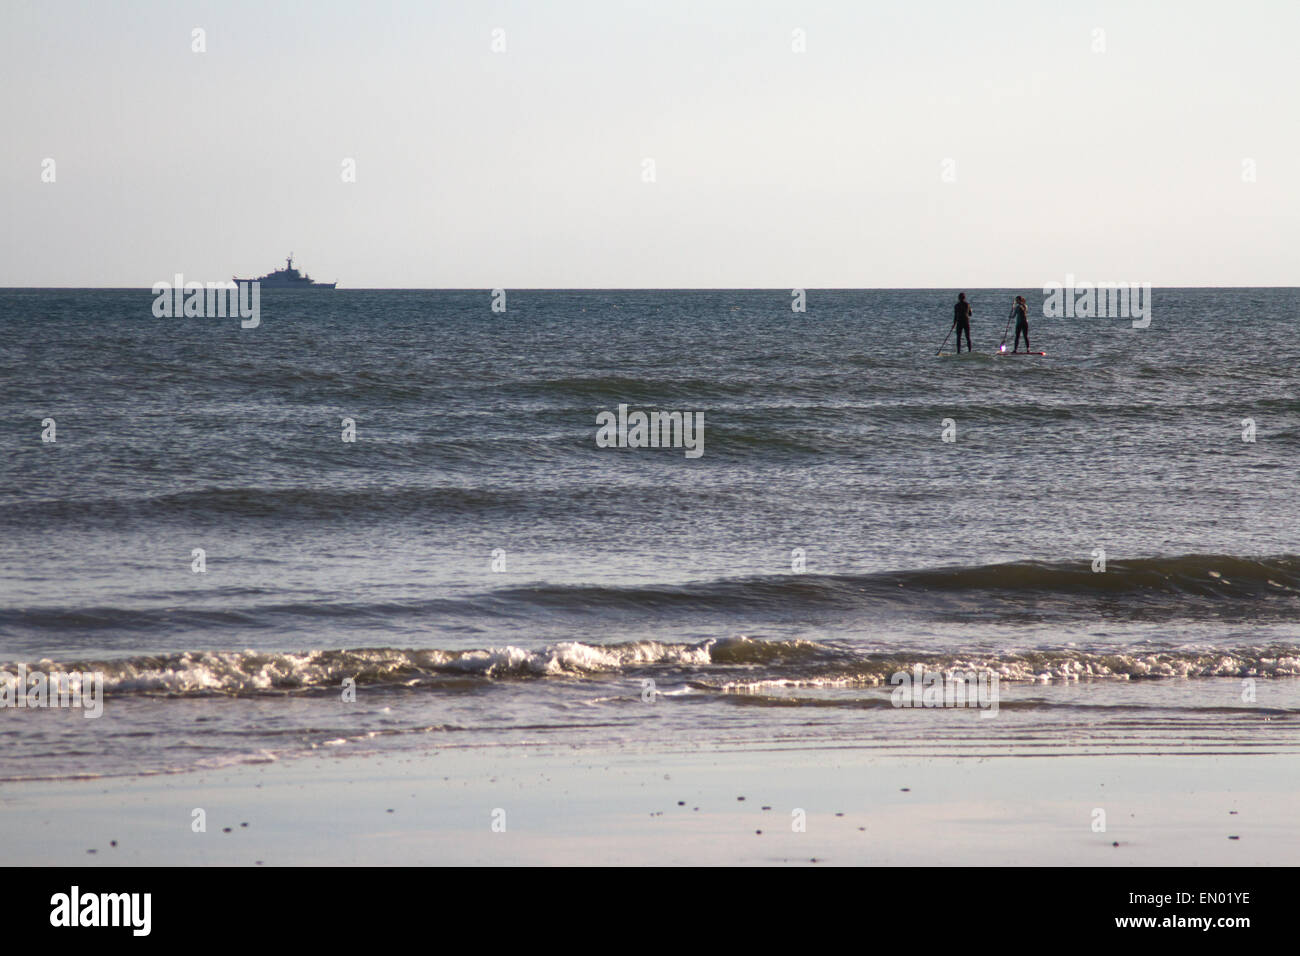 Surfers testa fuori al mare di spiaggia di Brighton, con una nave da guerra all'orizzonte Foto Stock